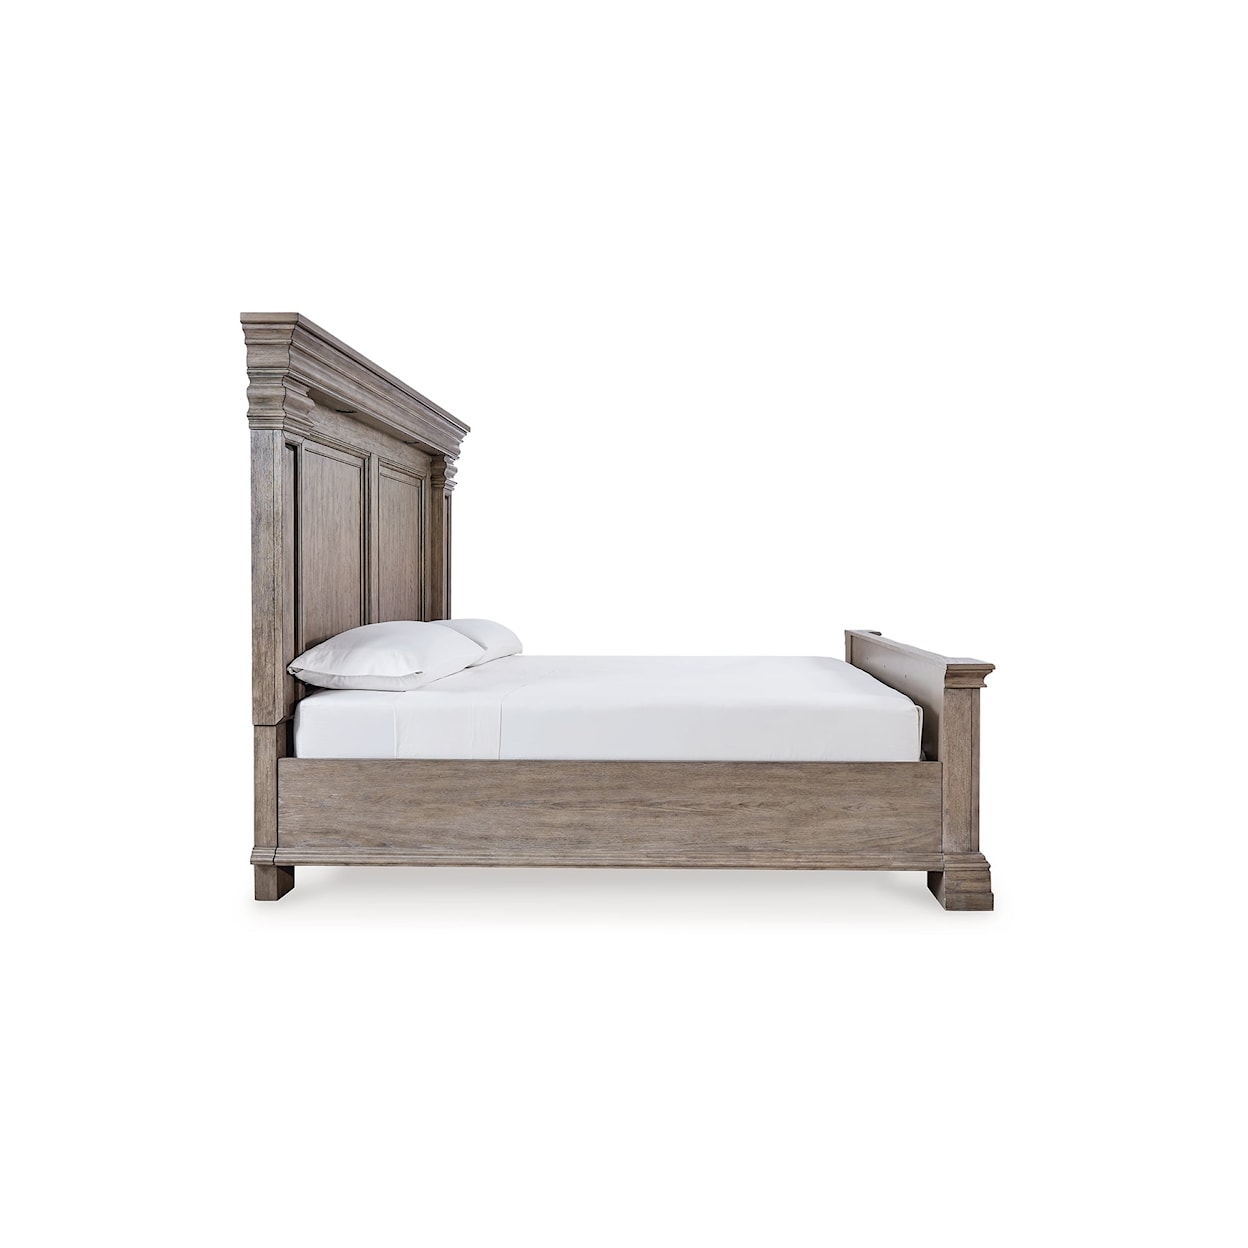 Ashley Furniture Signature Design Blairhurst Queen Panel Bed